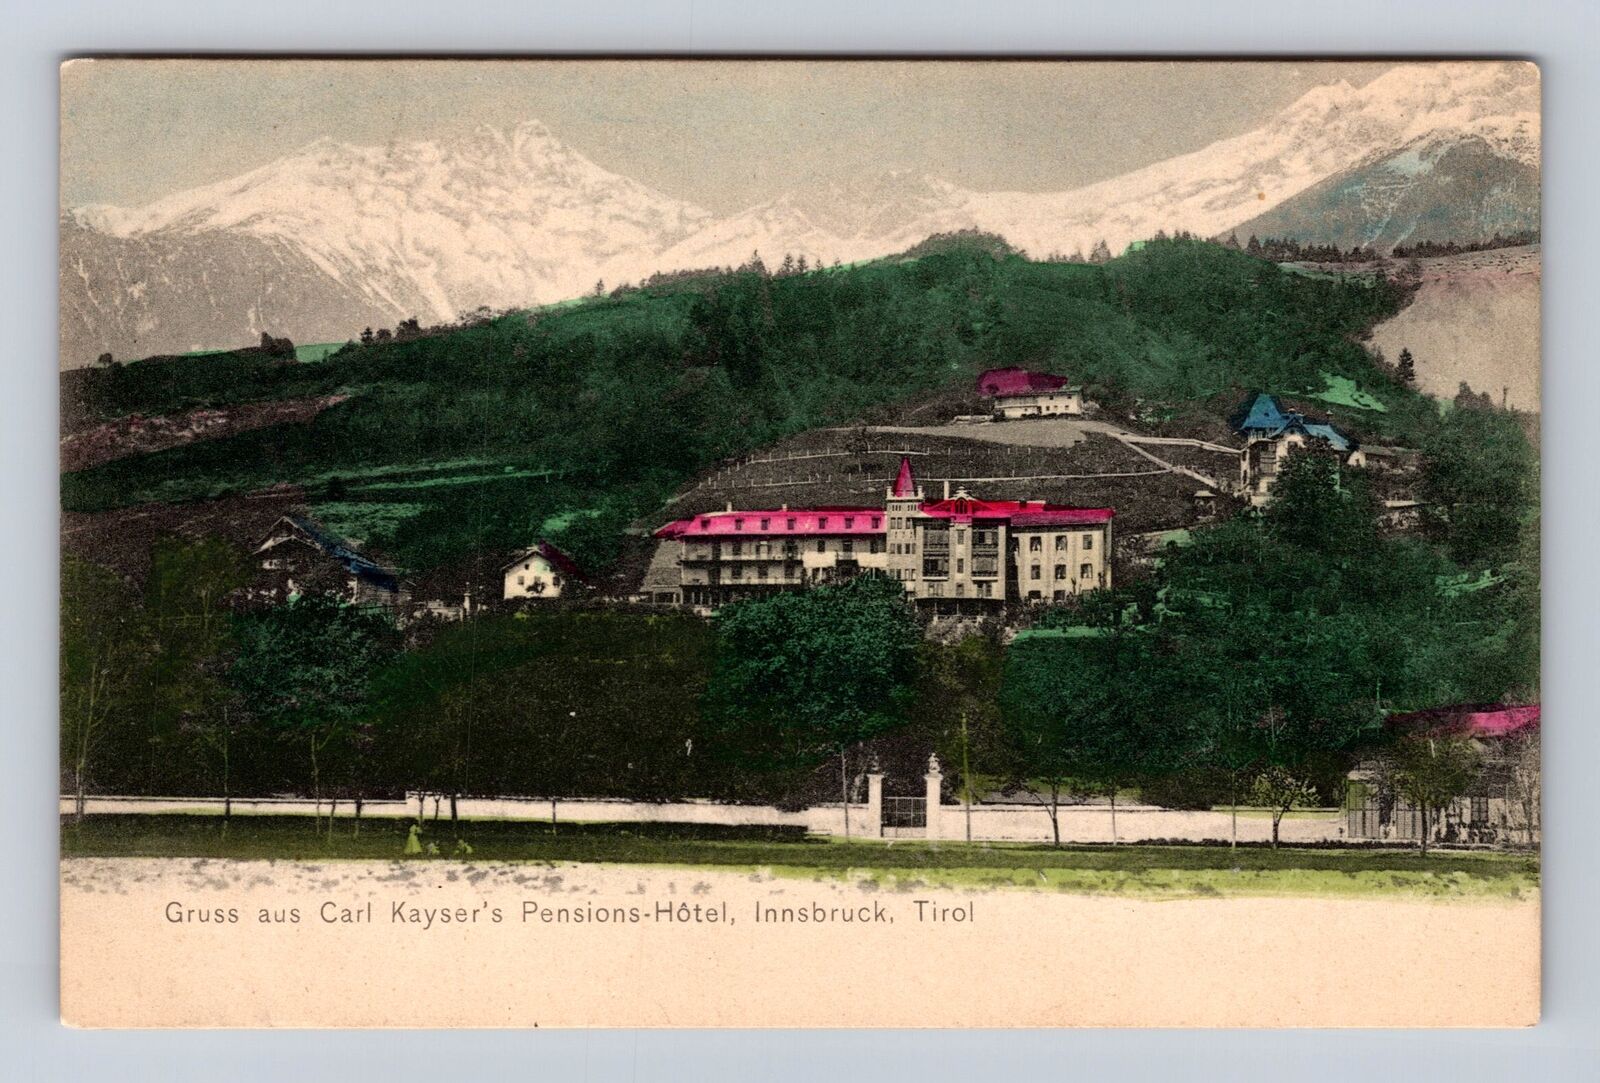 Innsbruck Tyrol Austria, Gruss aus Carl Kayser's Pensions-Hótel Vintage Postcard